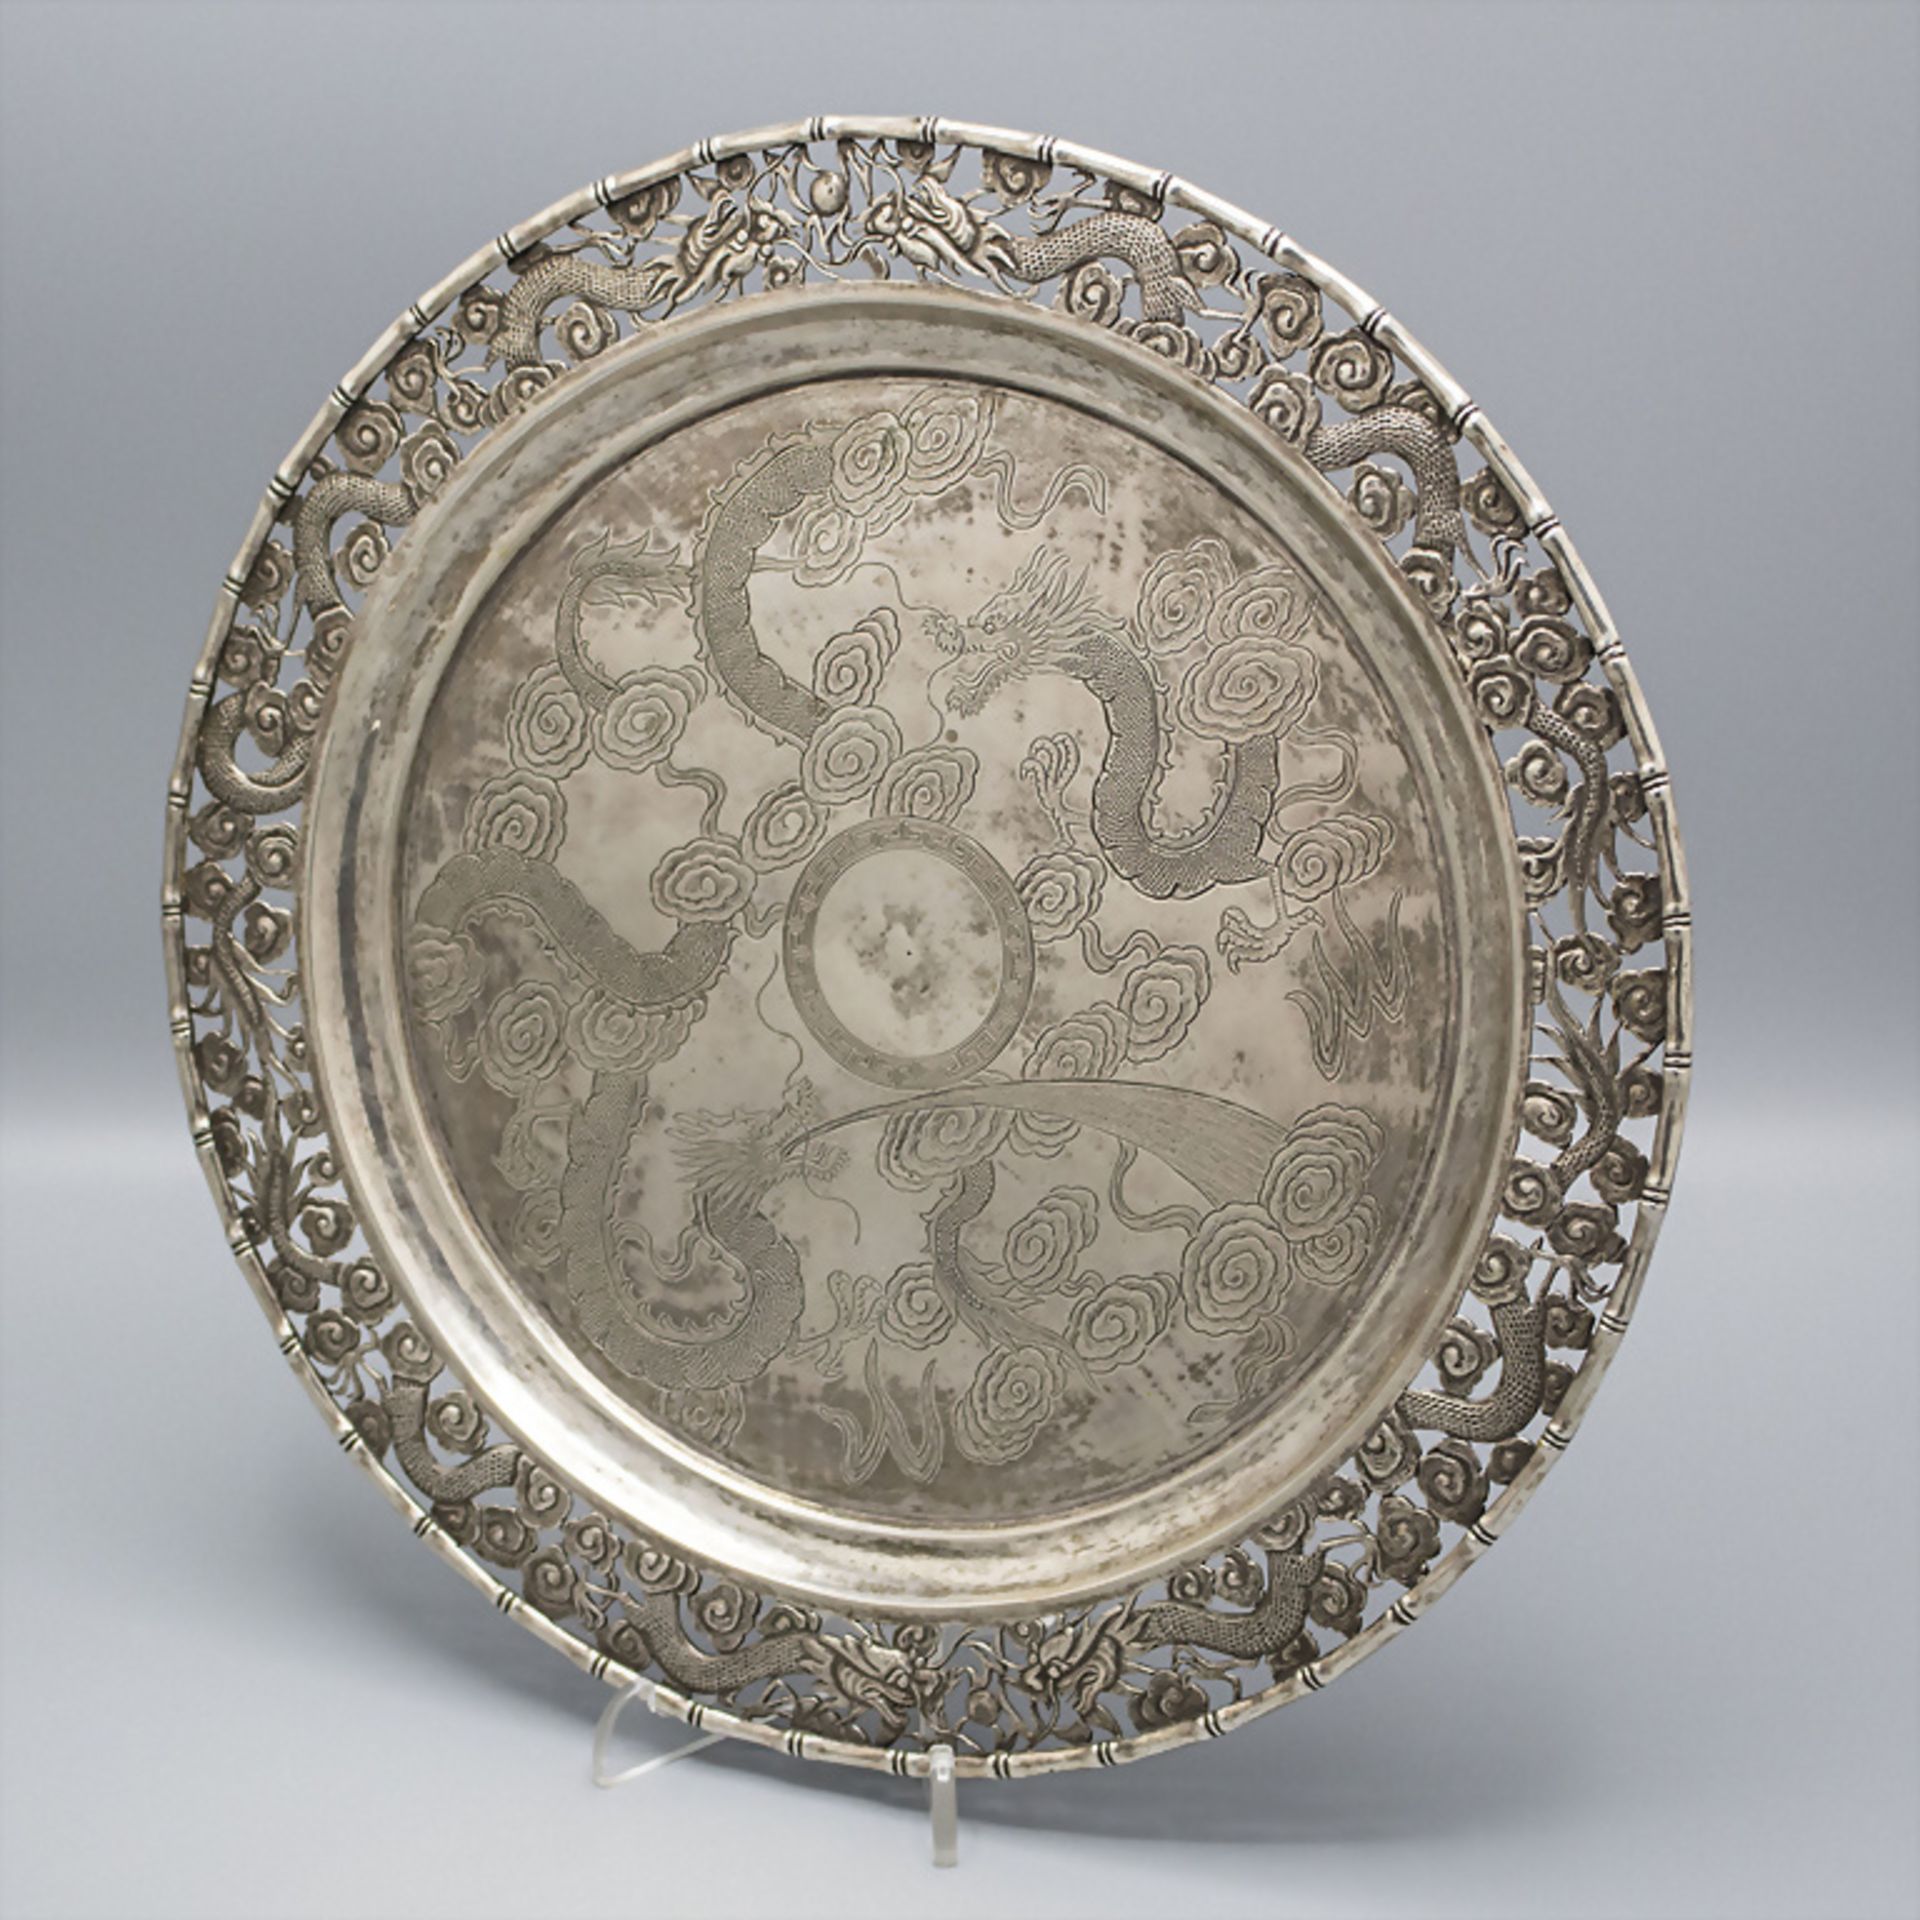 Rundes Silbertablet mit kl. Silberschale mit Drachendekor / A round silver tablet with a small ... - Bild 2 aus 9